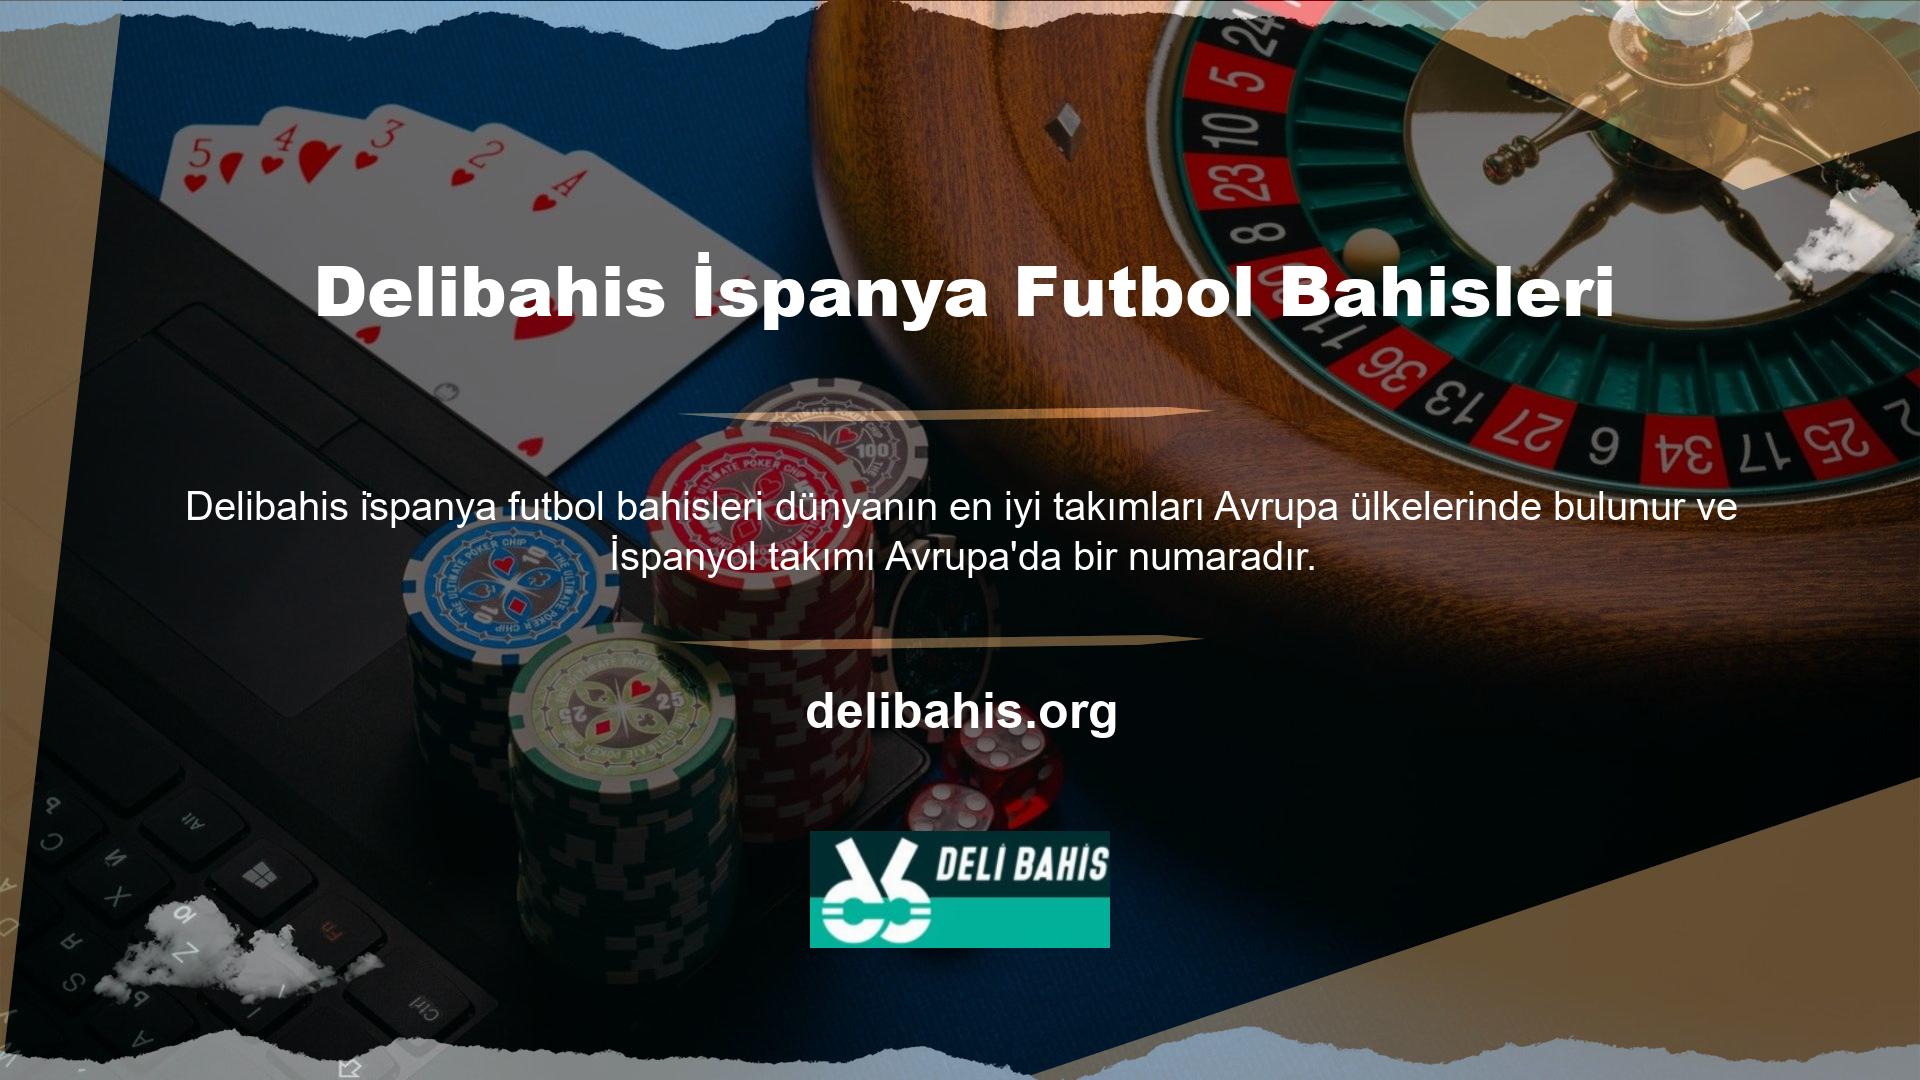 Delibahis la liga standı, ülkemizden ve diğer ülkelerden Delibahis kullanıcılarının bahis kuponlarını tamamlamalarına ve en iyi seçimlere bahis yapmalarına yardımcı olur